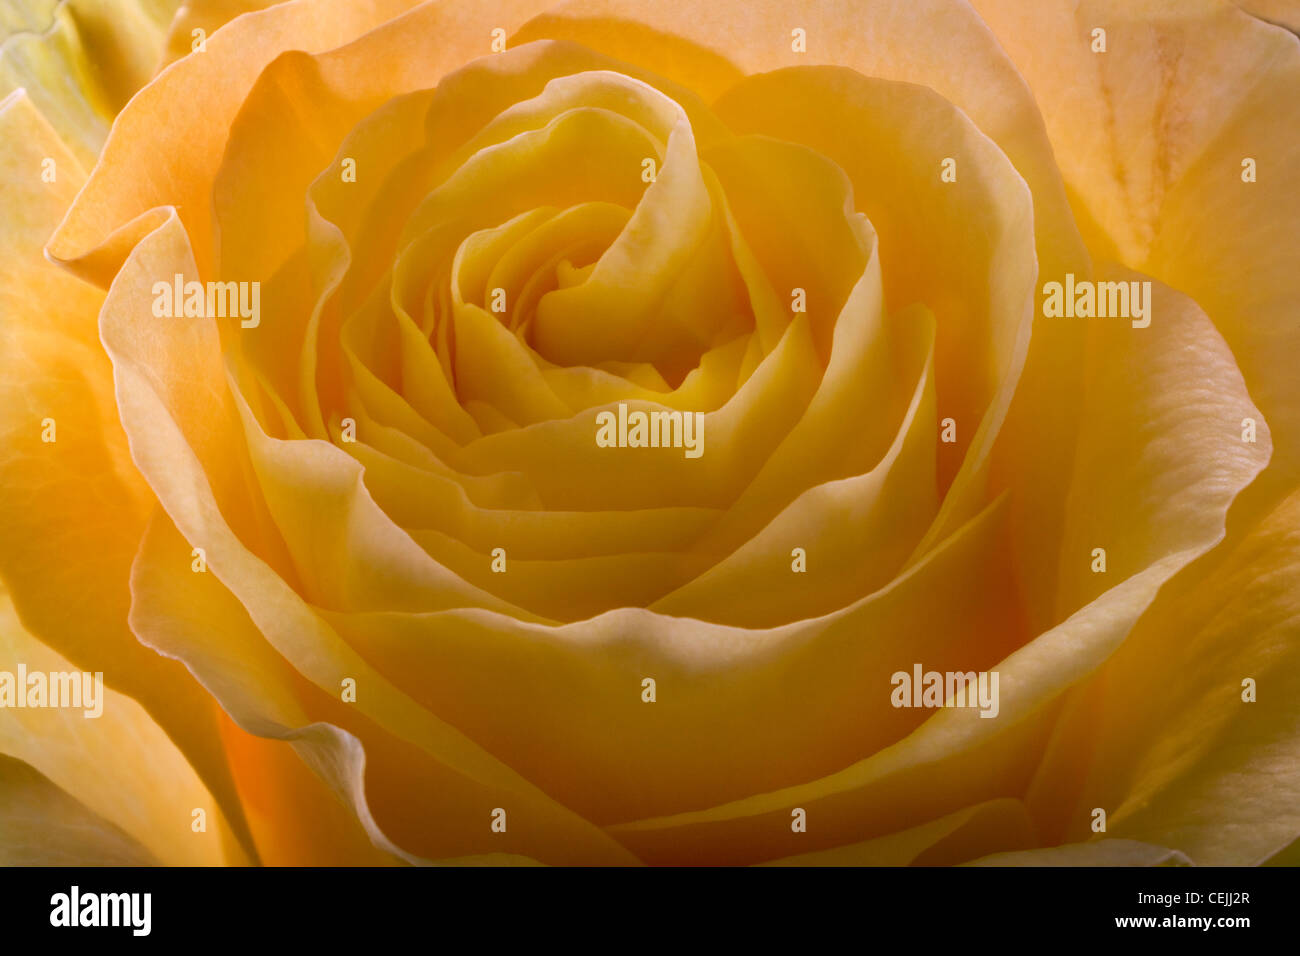 Gelbe rose Nahaufnahme als romantische Blume Stockfoto